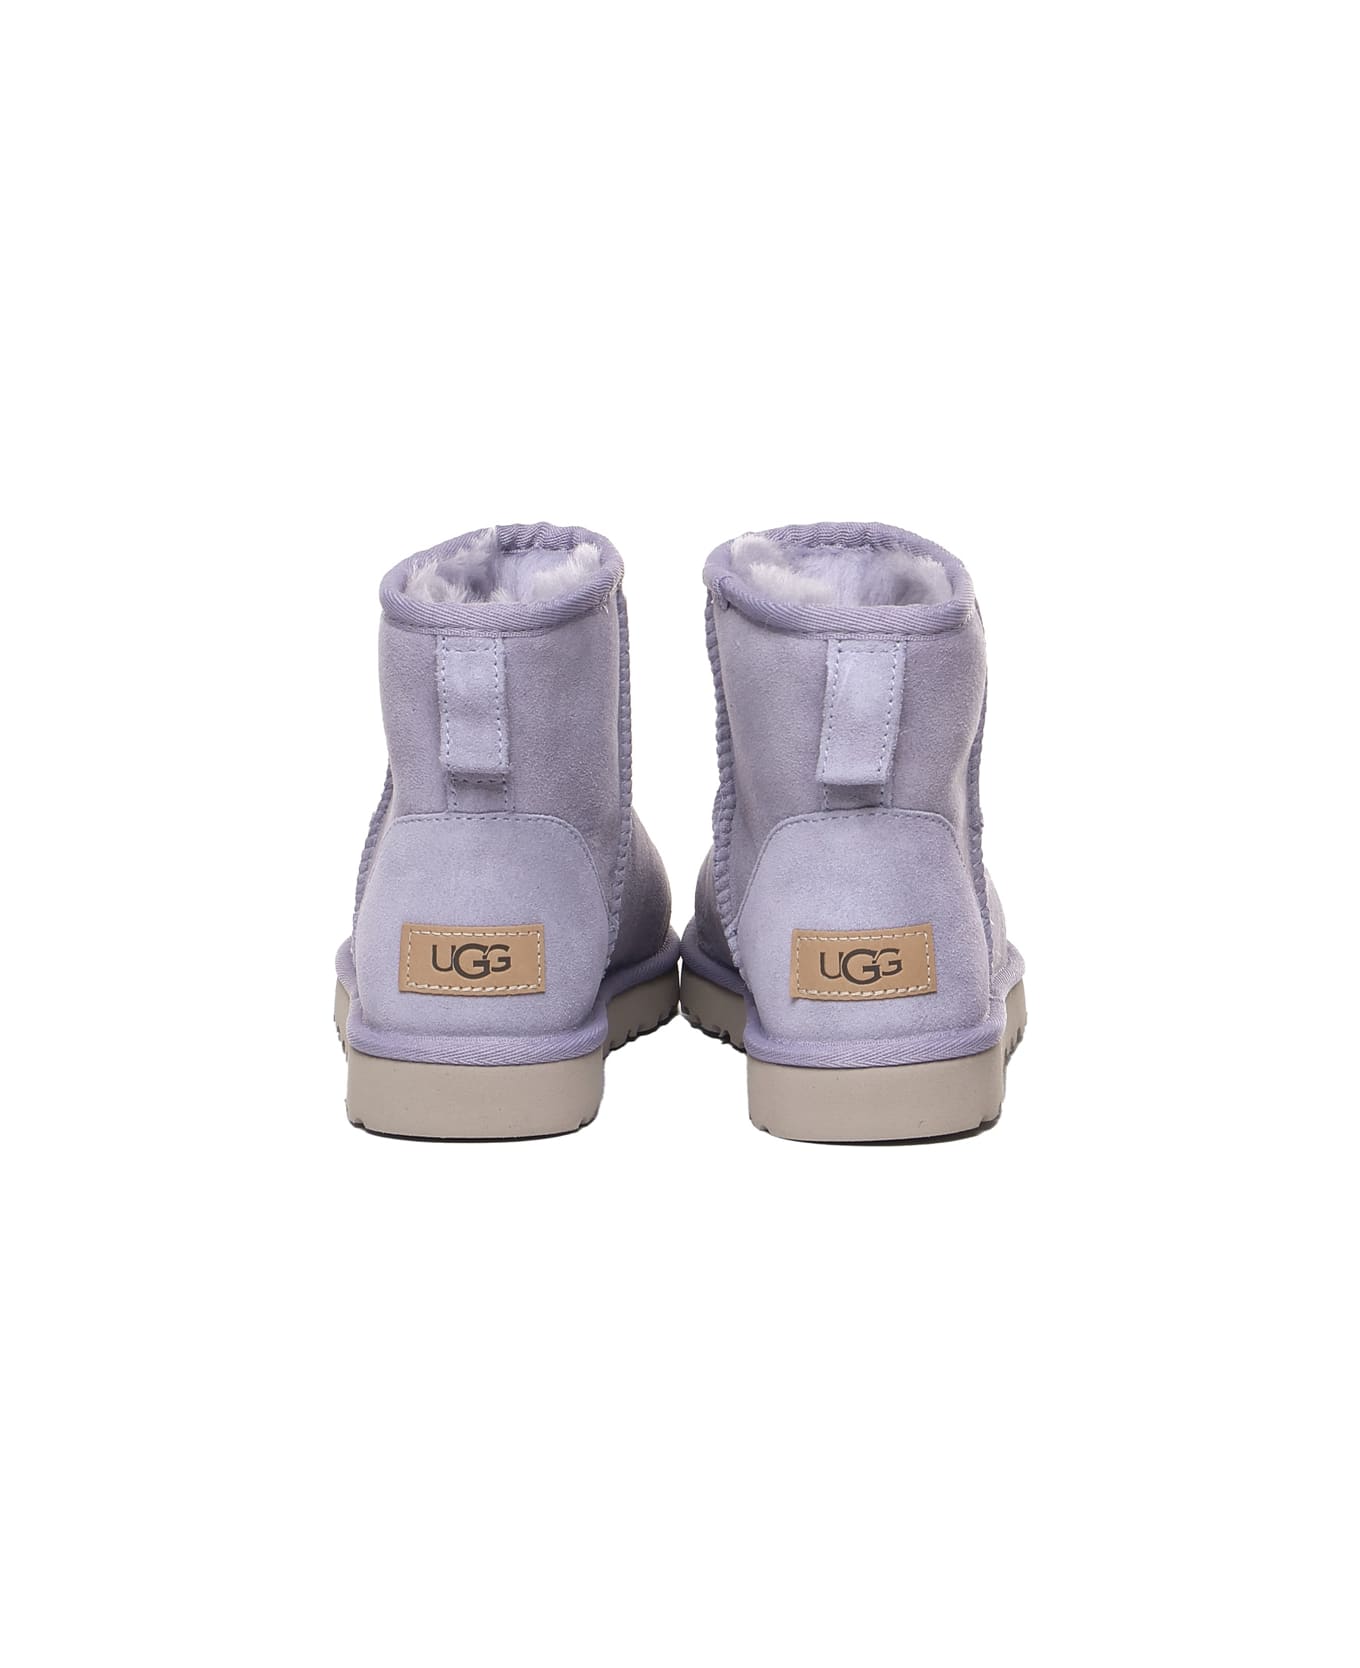 UGG Classic Mini Boots - Grey